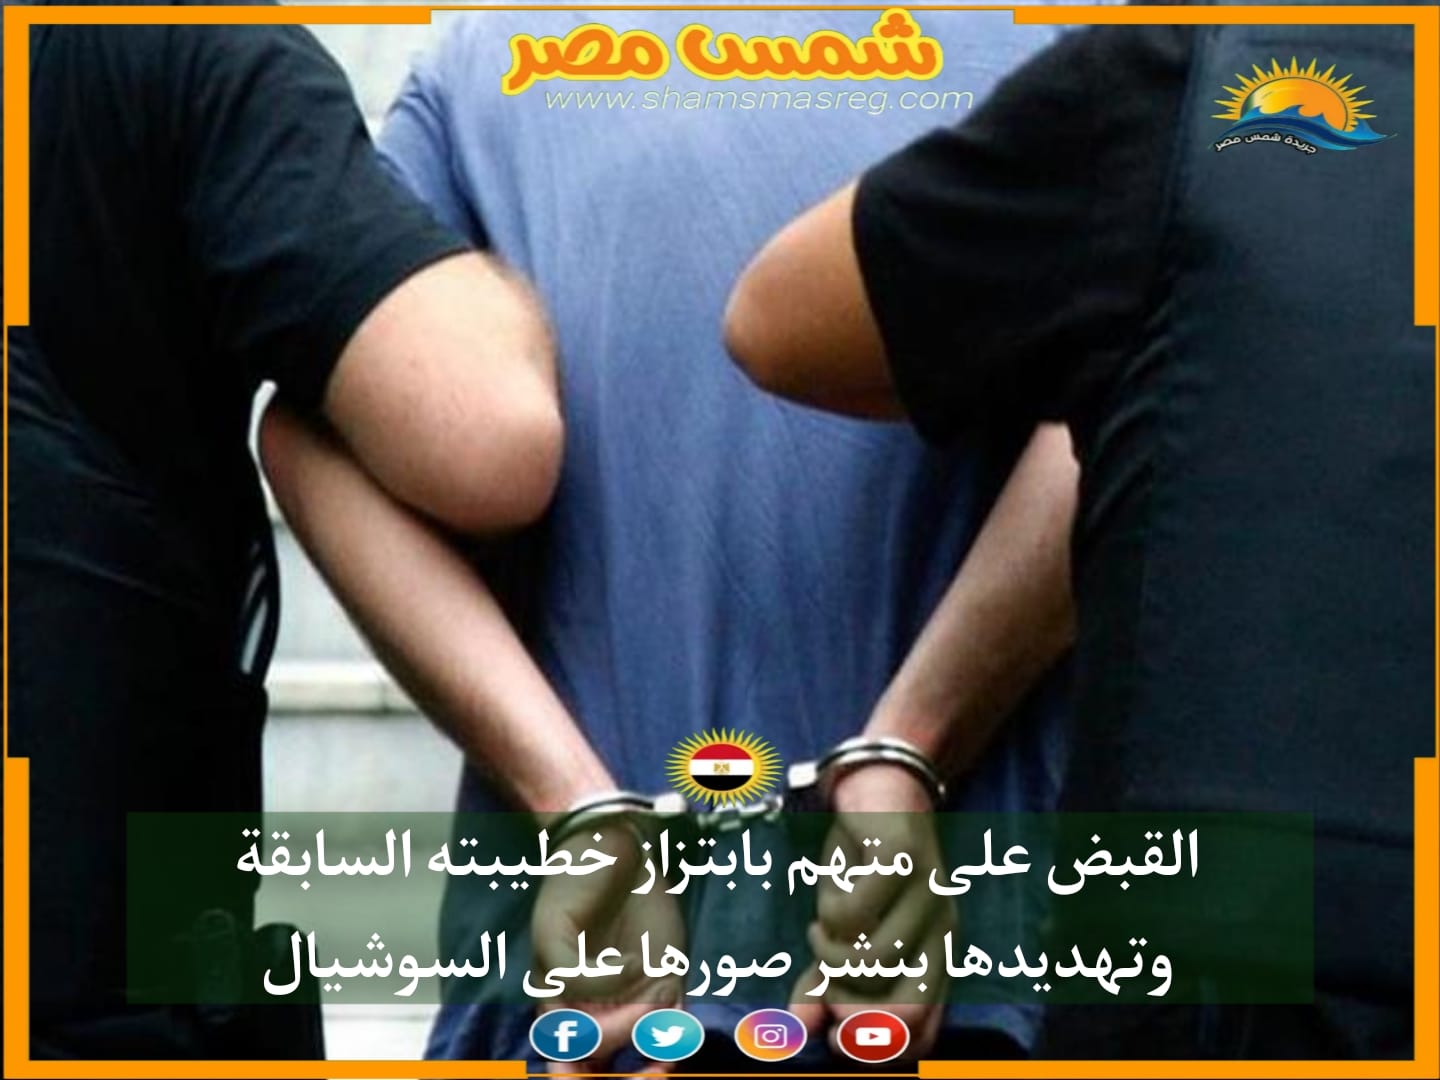 |شمس مصر|.. القبض على متهم بابتزاز خطيبته السابقة وتهديدها بنشر صورها على السوشيال 